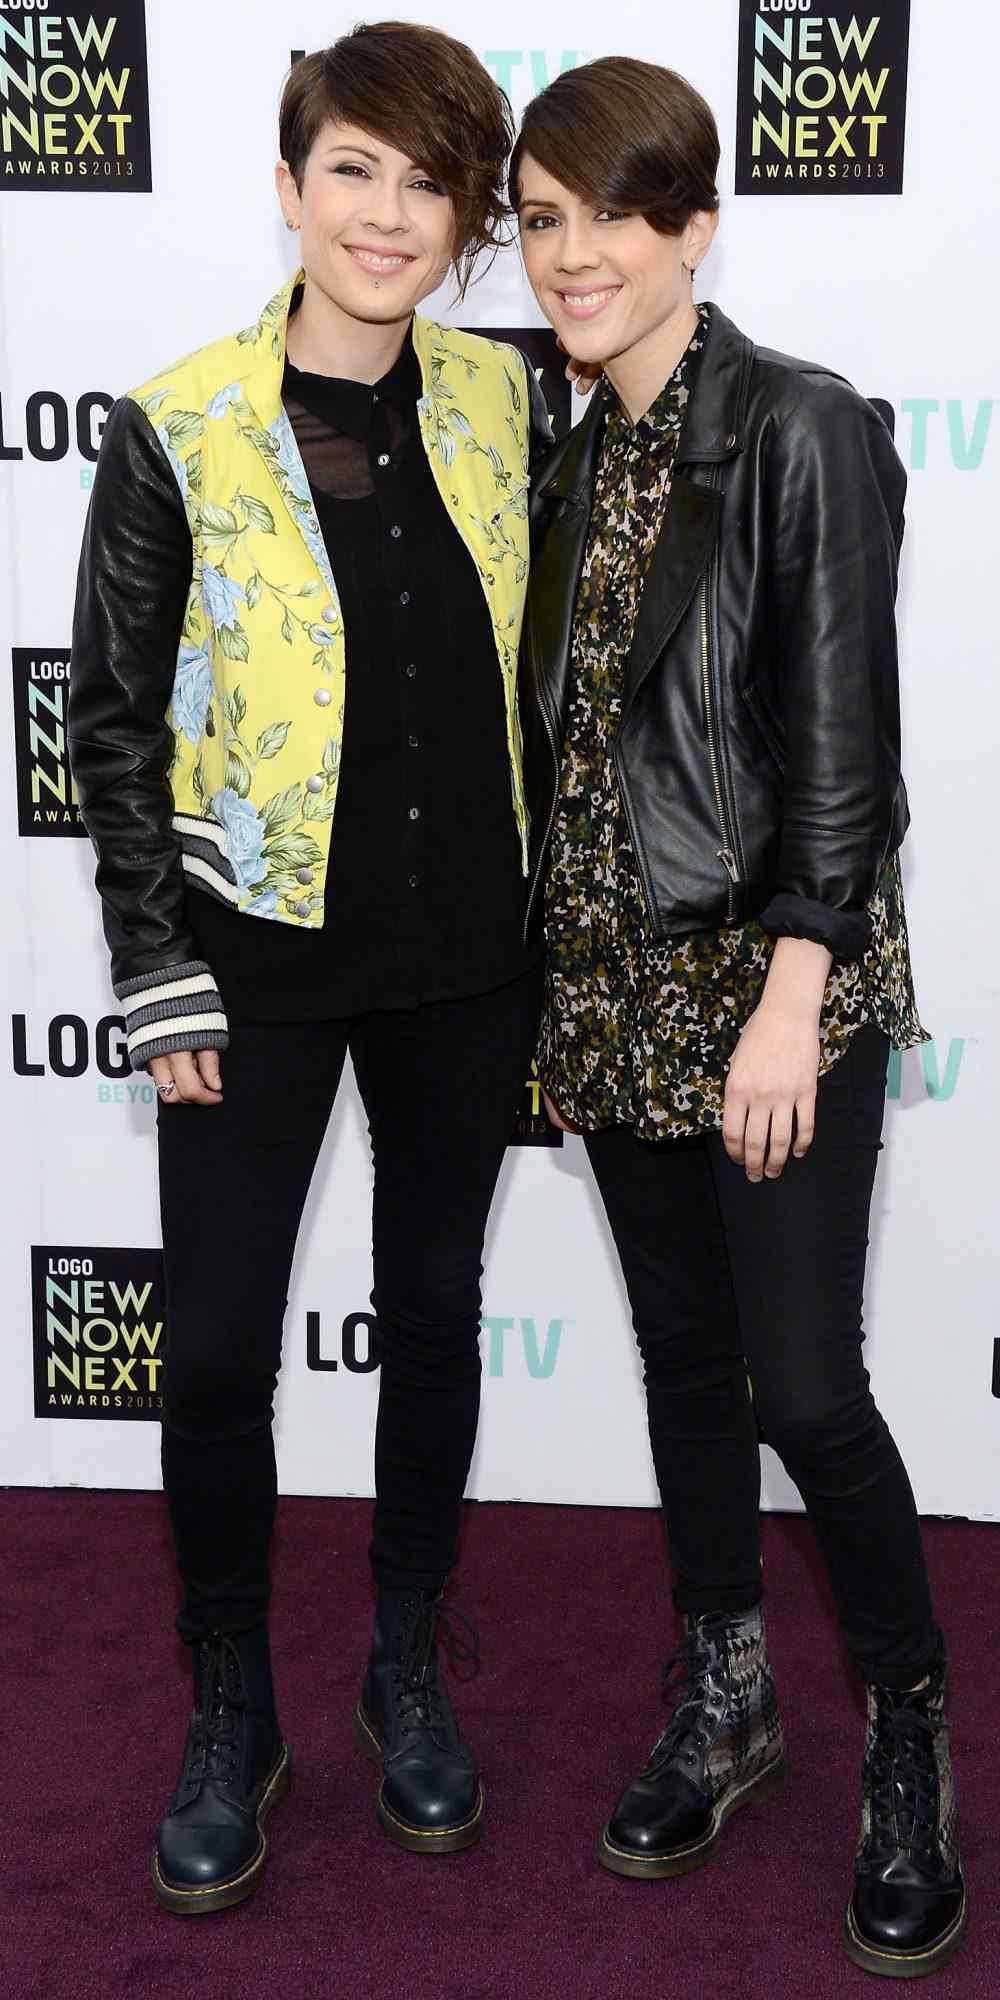 Tegan and Sara Quin